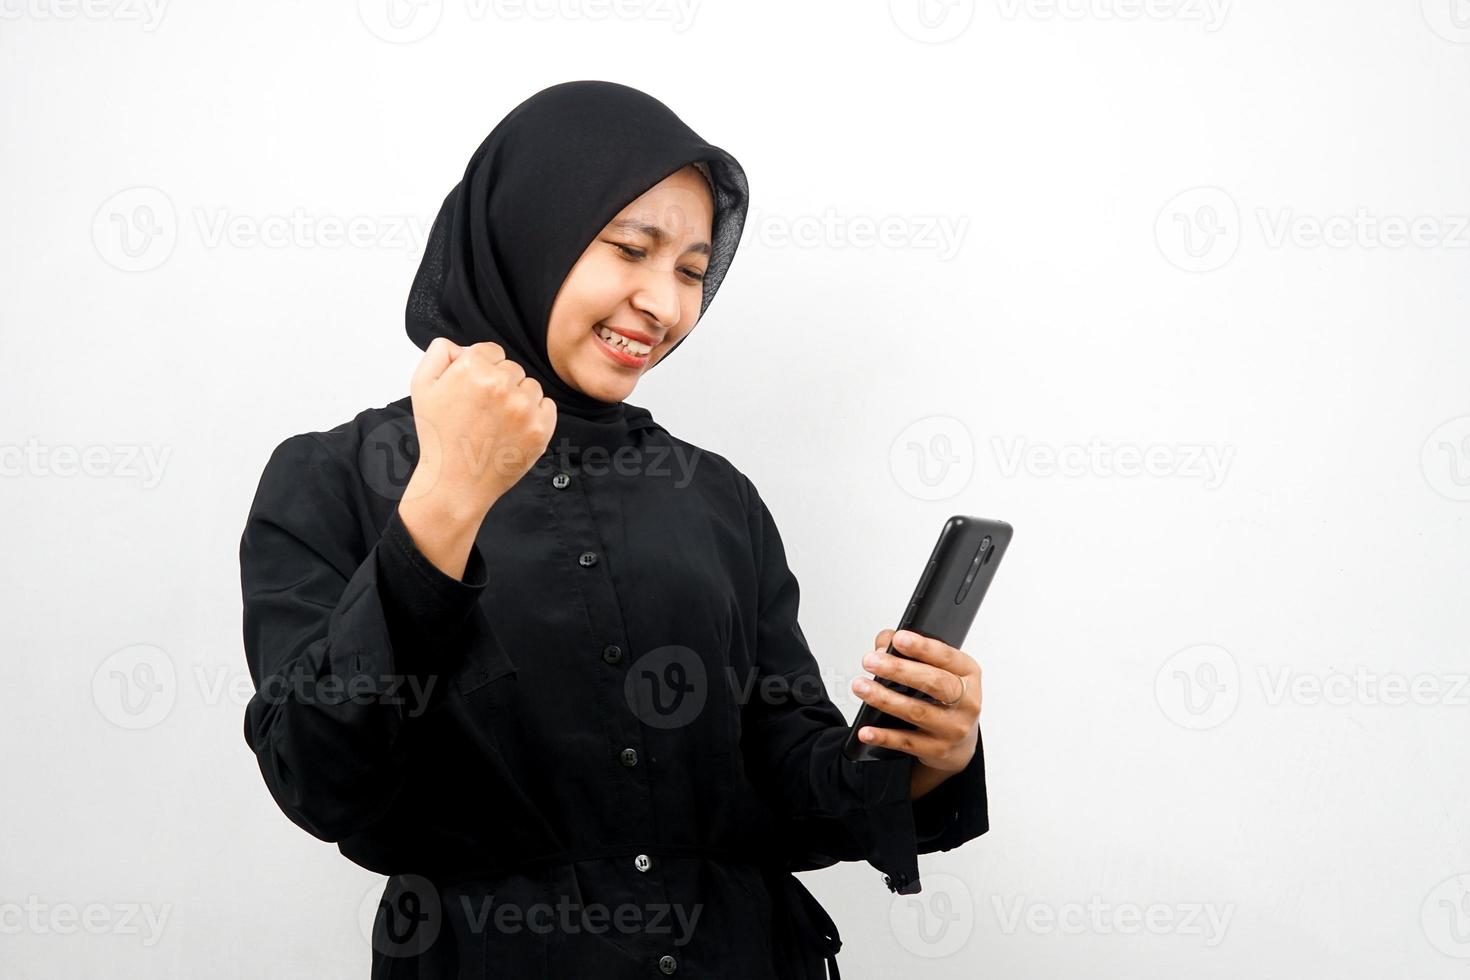 schöne junge asiatische muslimische frau mit den händen, die smartphone halten, zuversichtlich, enthusiastisch und fröhlich lächeln, hände ballen, schlagen, sieg, erfolg, gute arbeit, isoliert auf weißem hintergrund foto